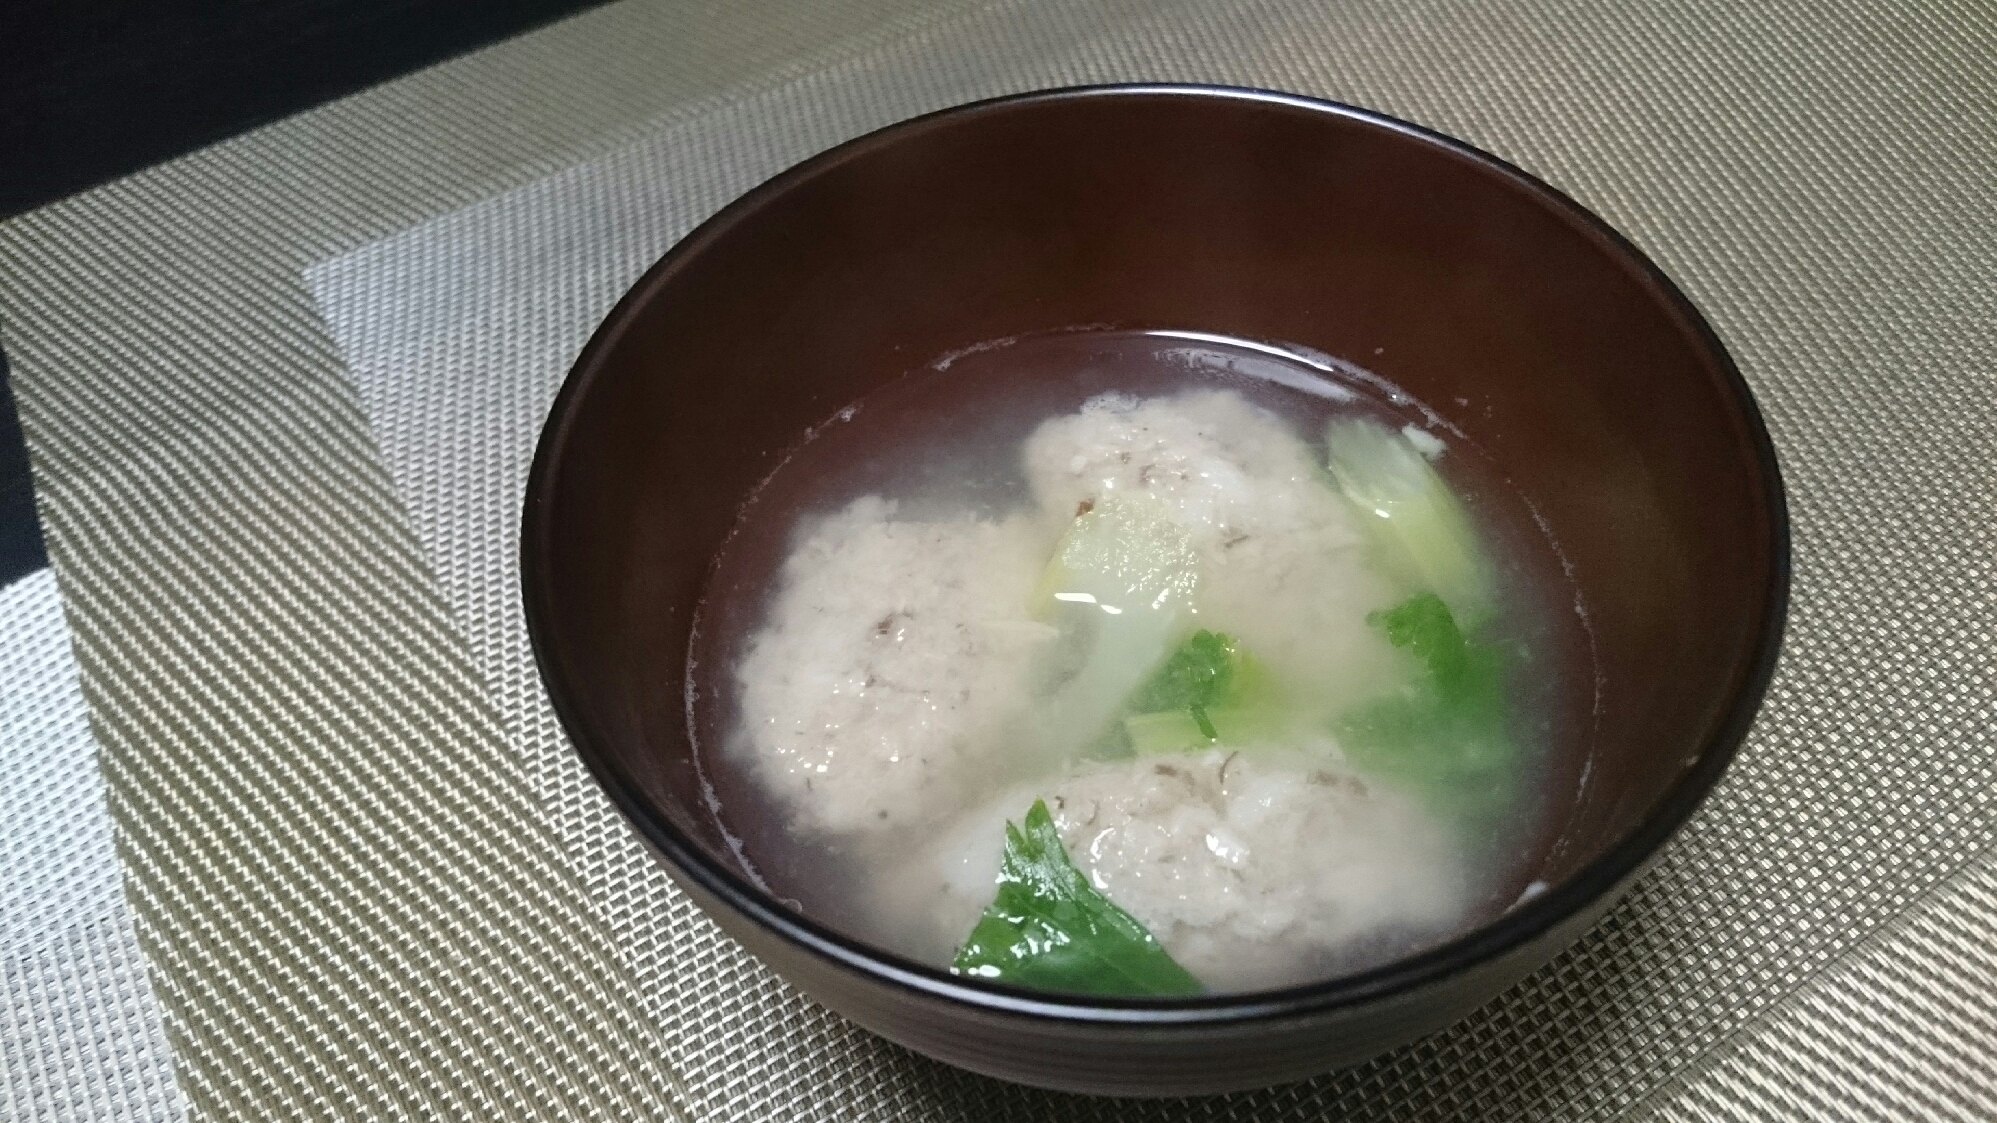 キノコと豆腐のお団子スープ